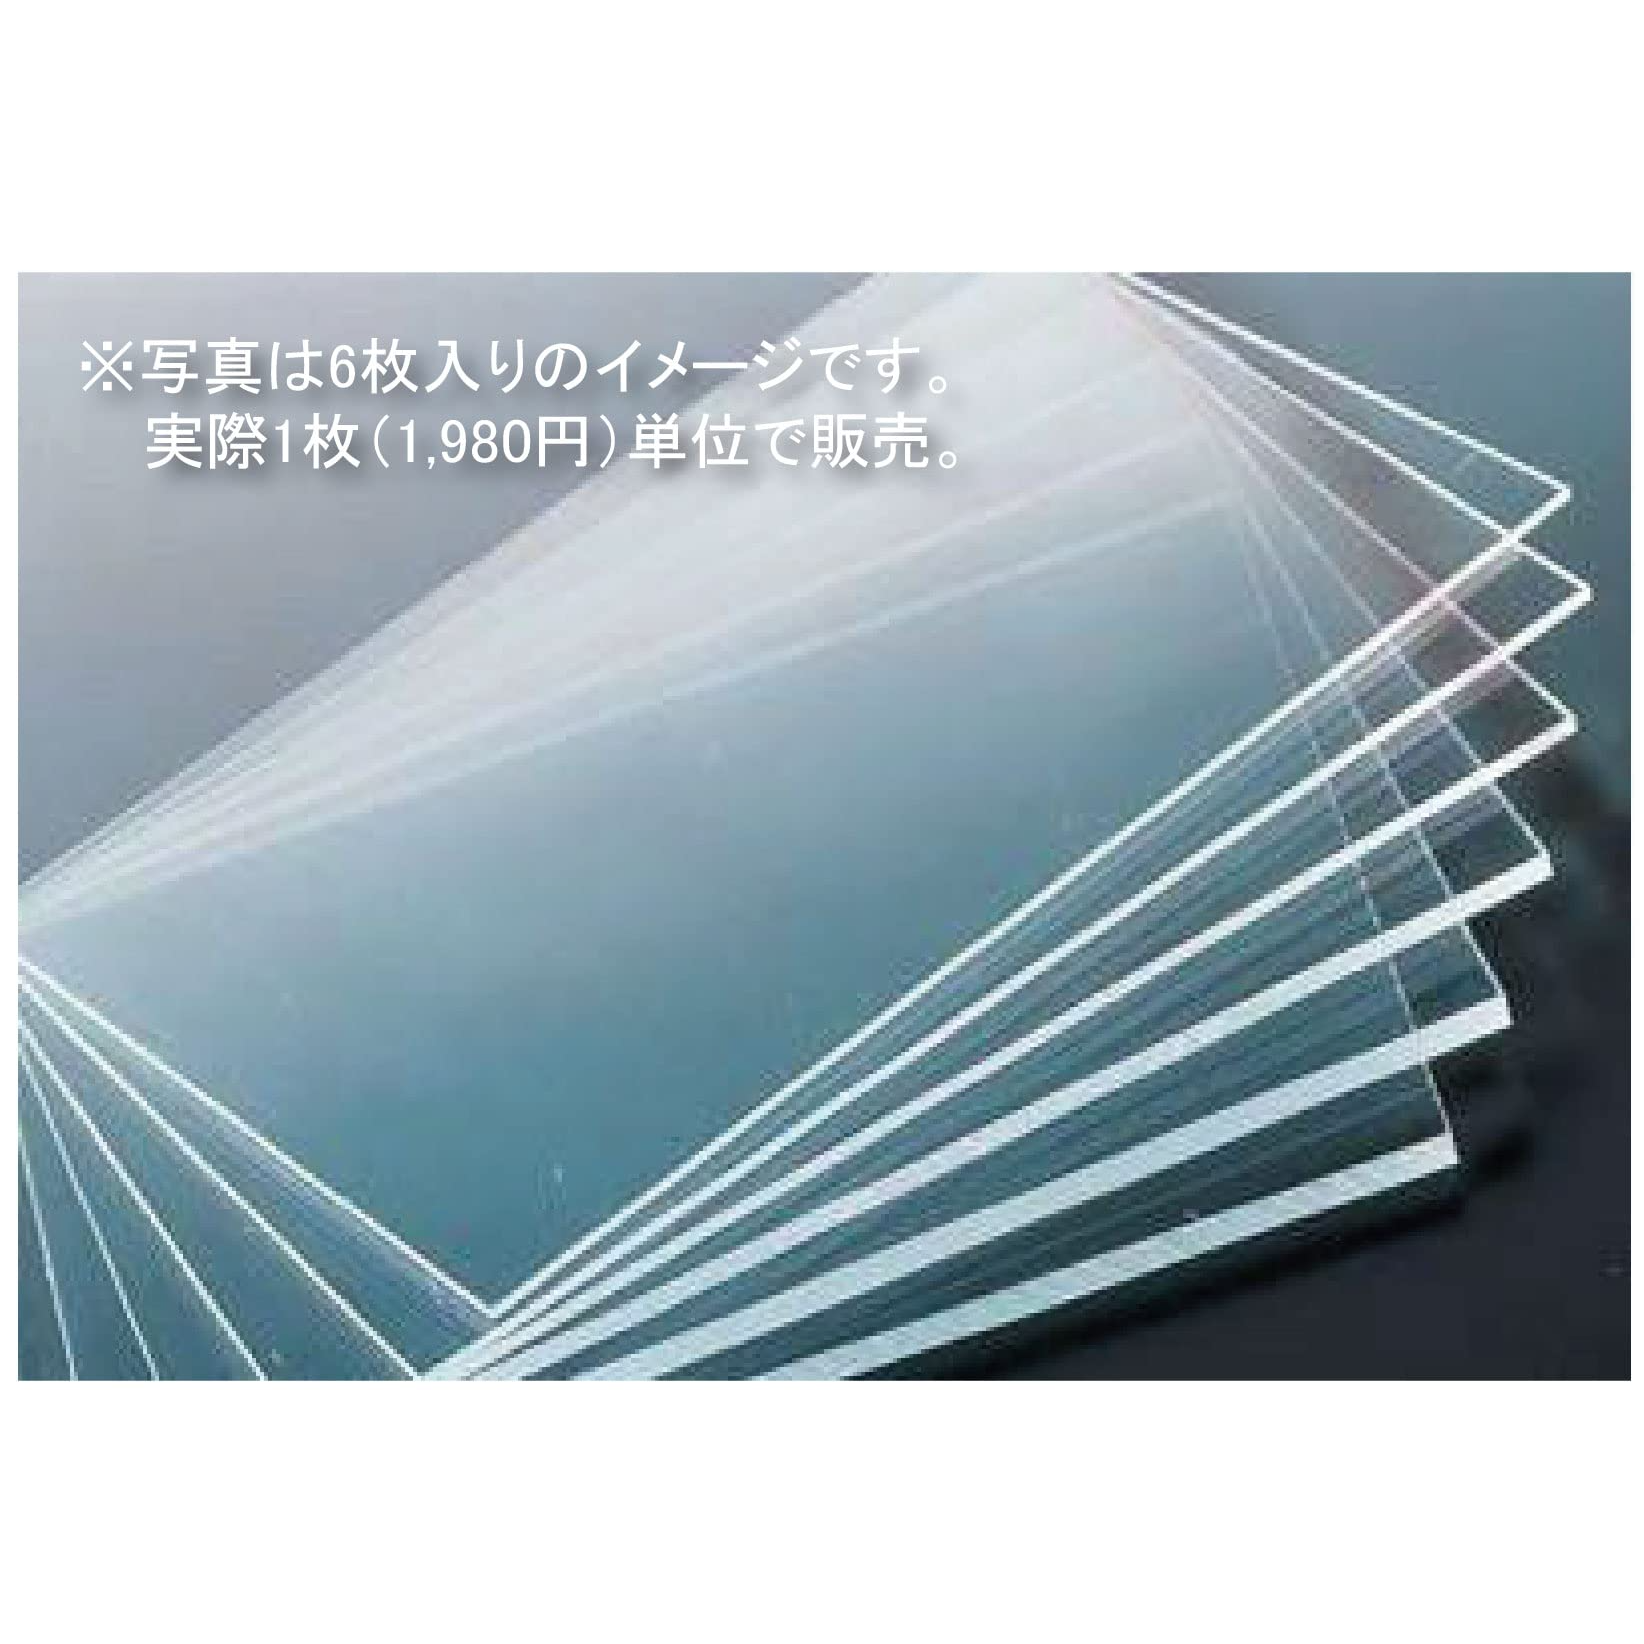 透明板 PET板 W915mm H605mm 厚み2mm 自作パーティション最適 飛沫防止透明板資材